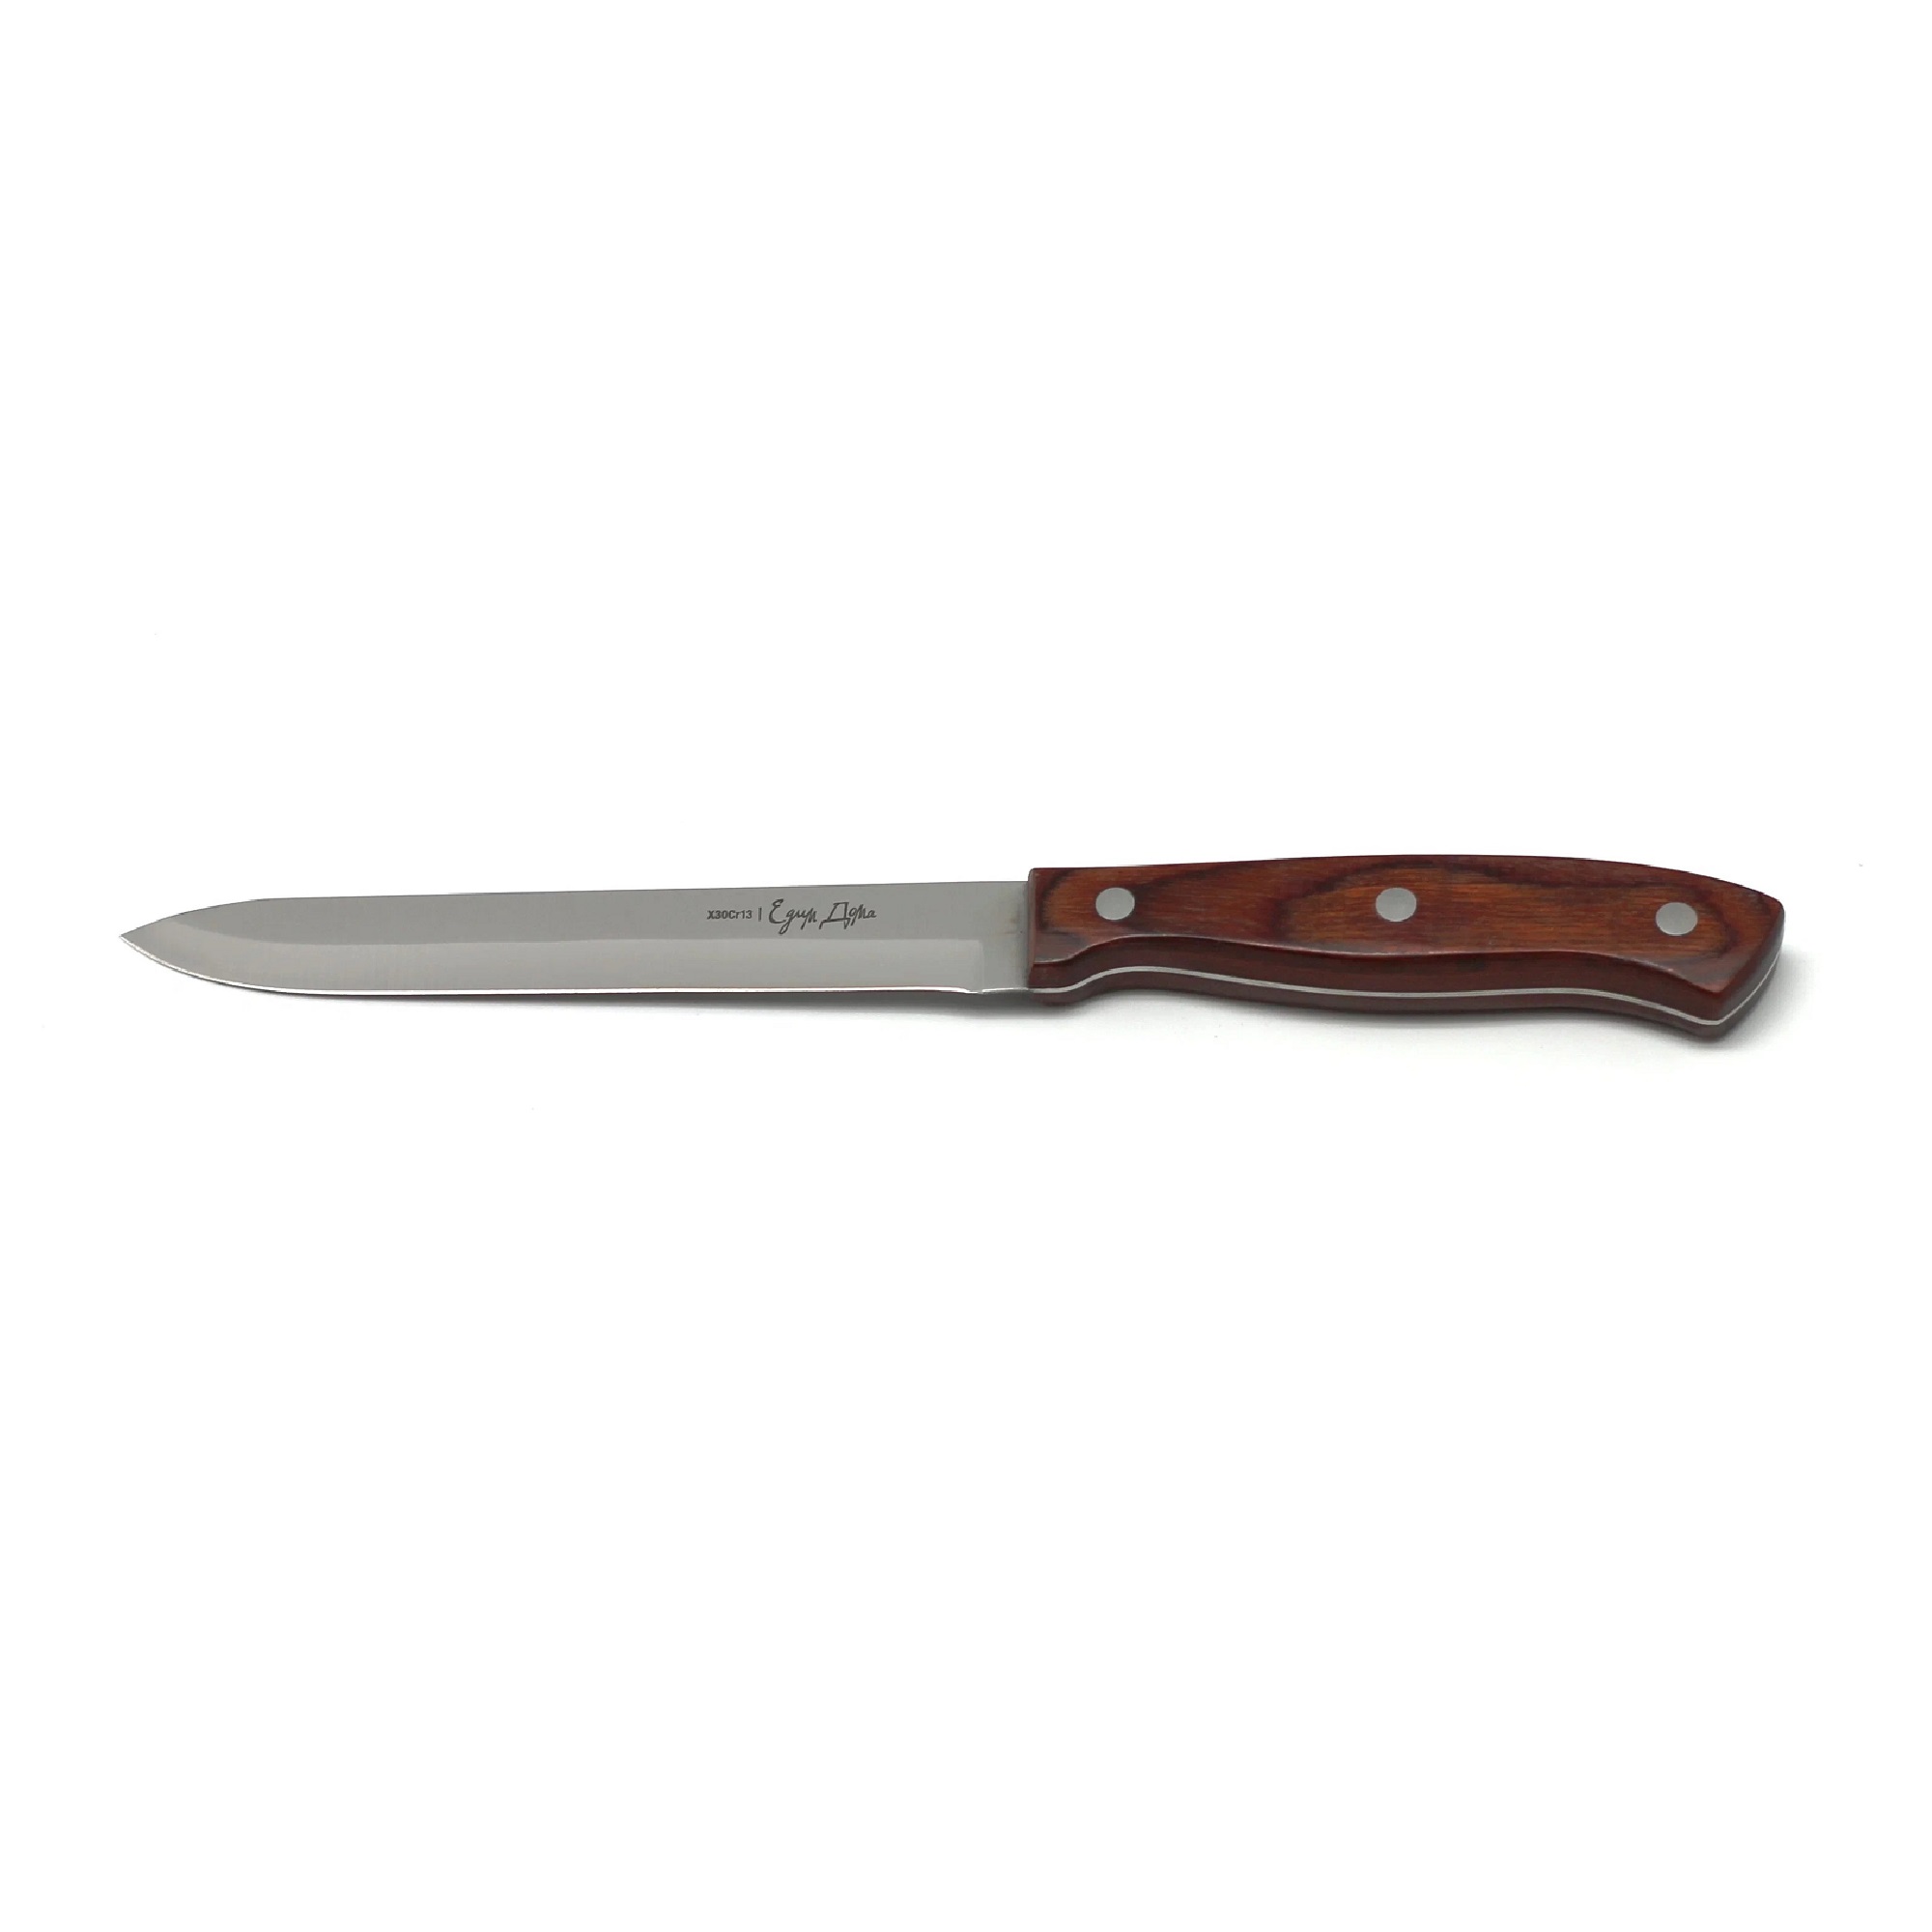 нож для нарезки едим дома 20см листовой ed 404 Нож универсальный Едим дома кухонный 14см листовой (ED-420)